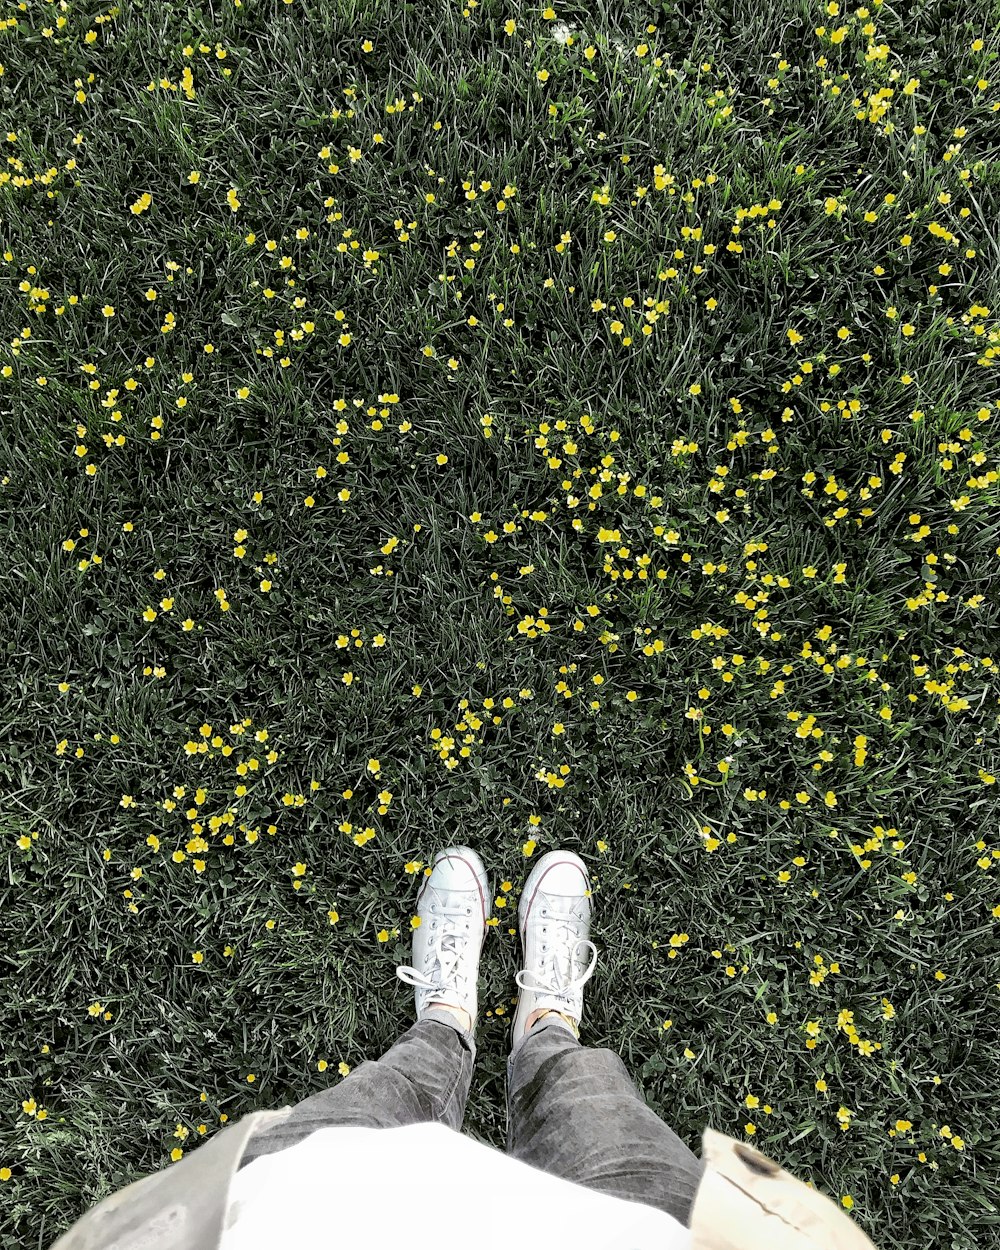 persona in pantaloni grigi e scarpe da ginnastica bianche in piedi su foglie gialle